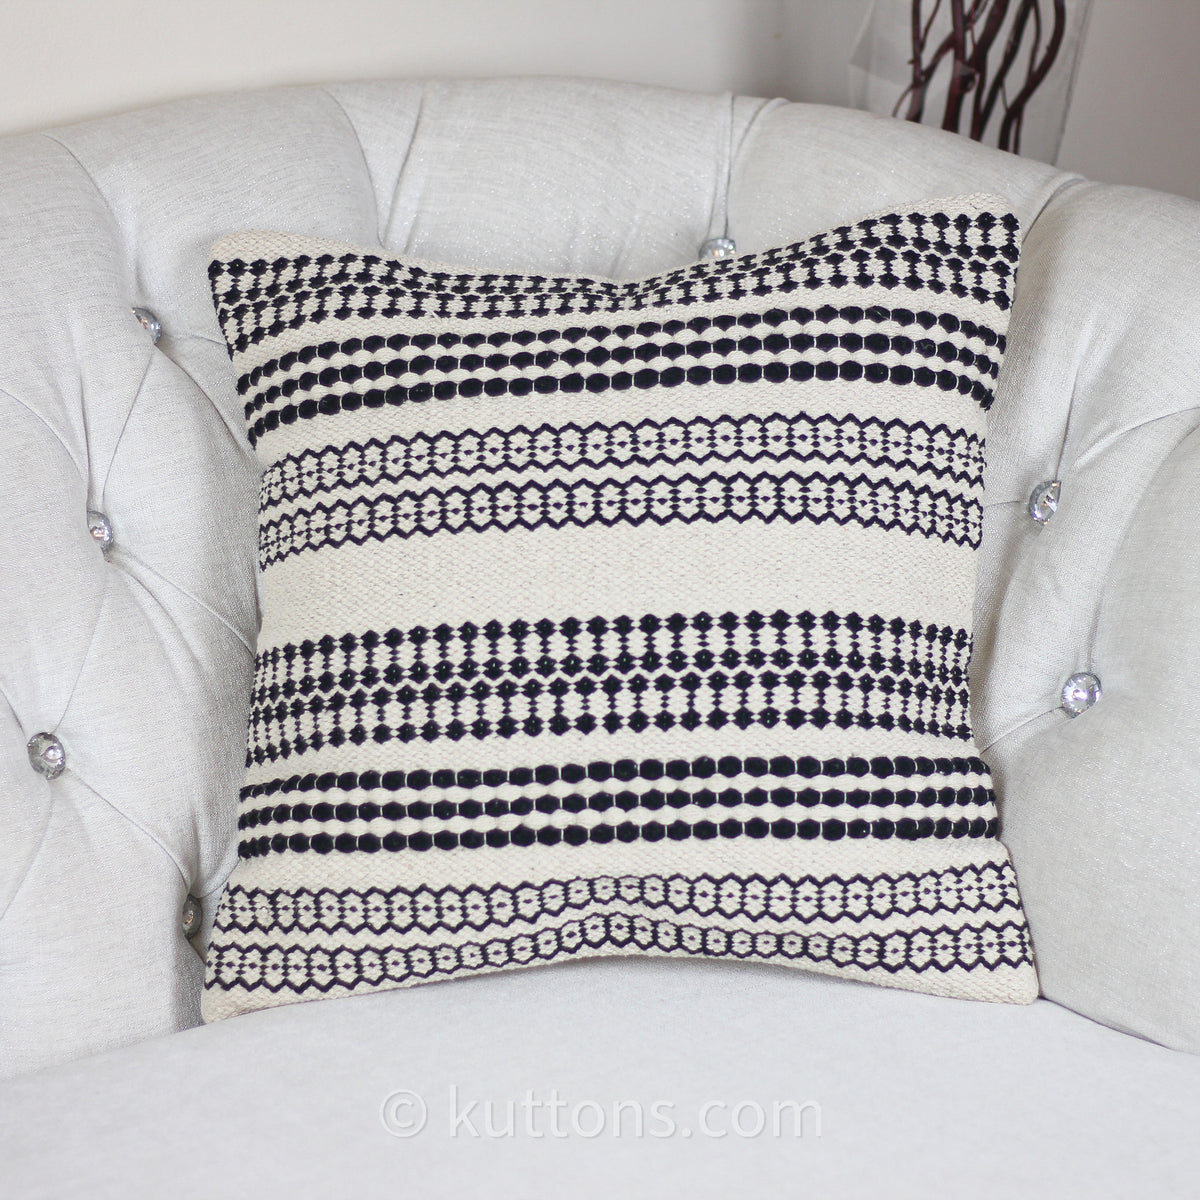 Handwoven Textured Cotton Bohemian Throw Pillow Cover | White-Black, 18x18"